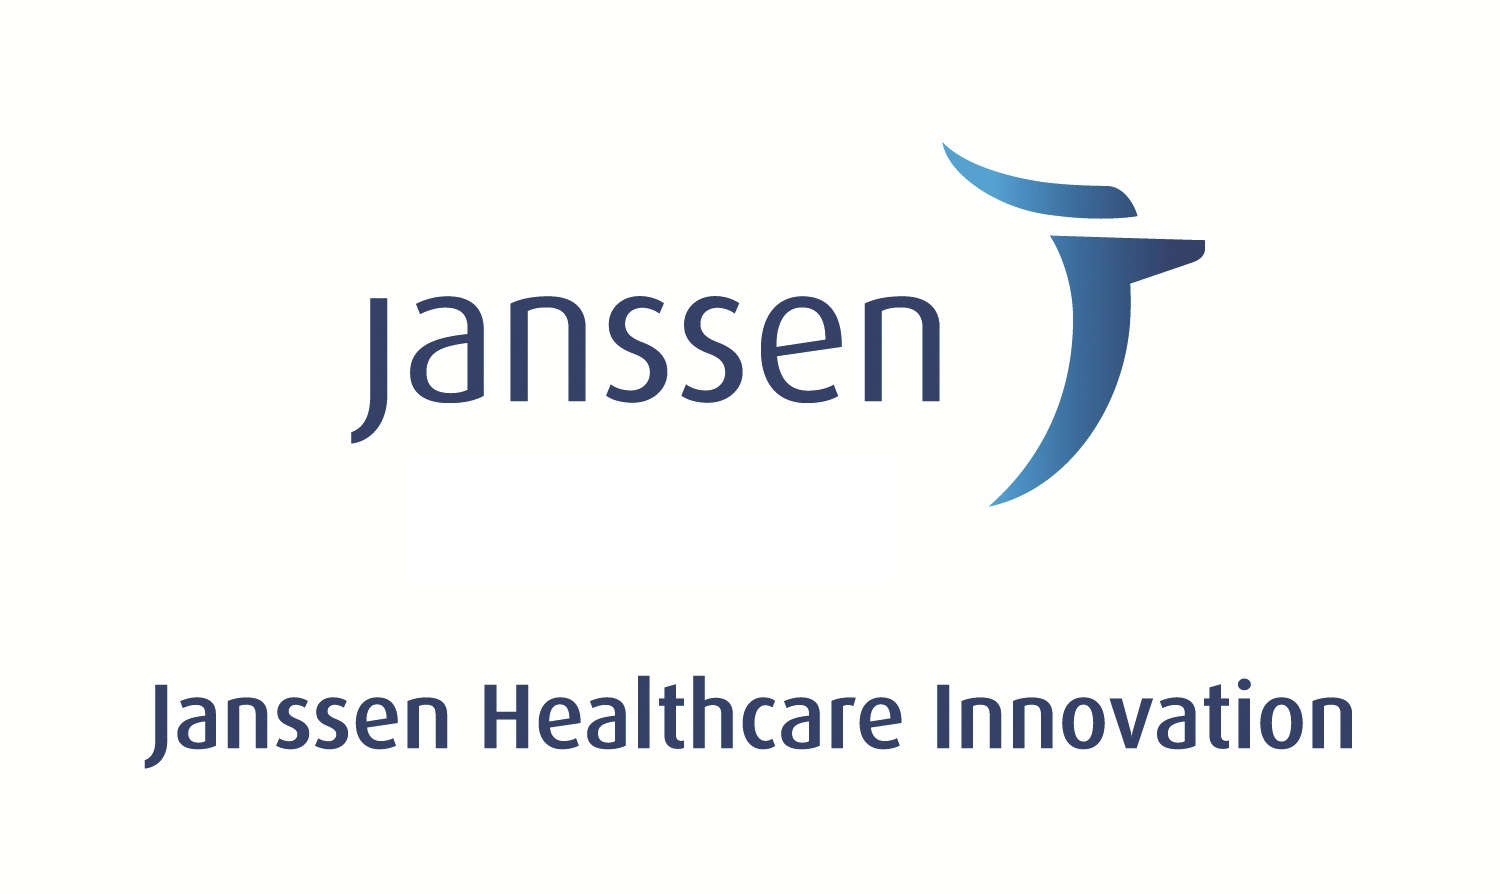 Janssen Healthcare